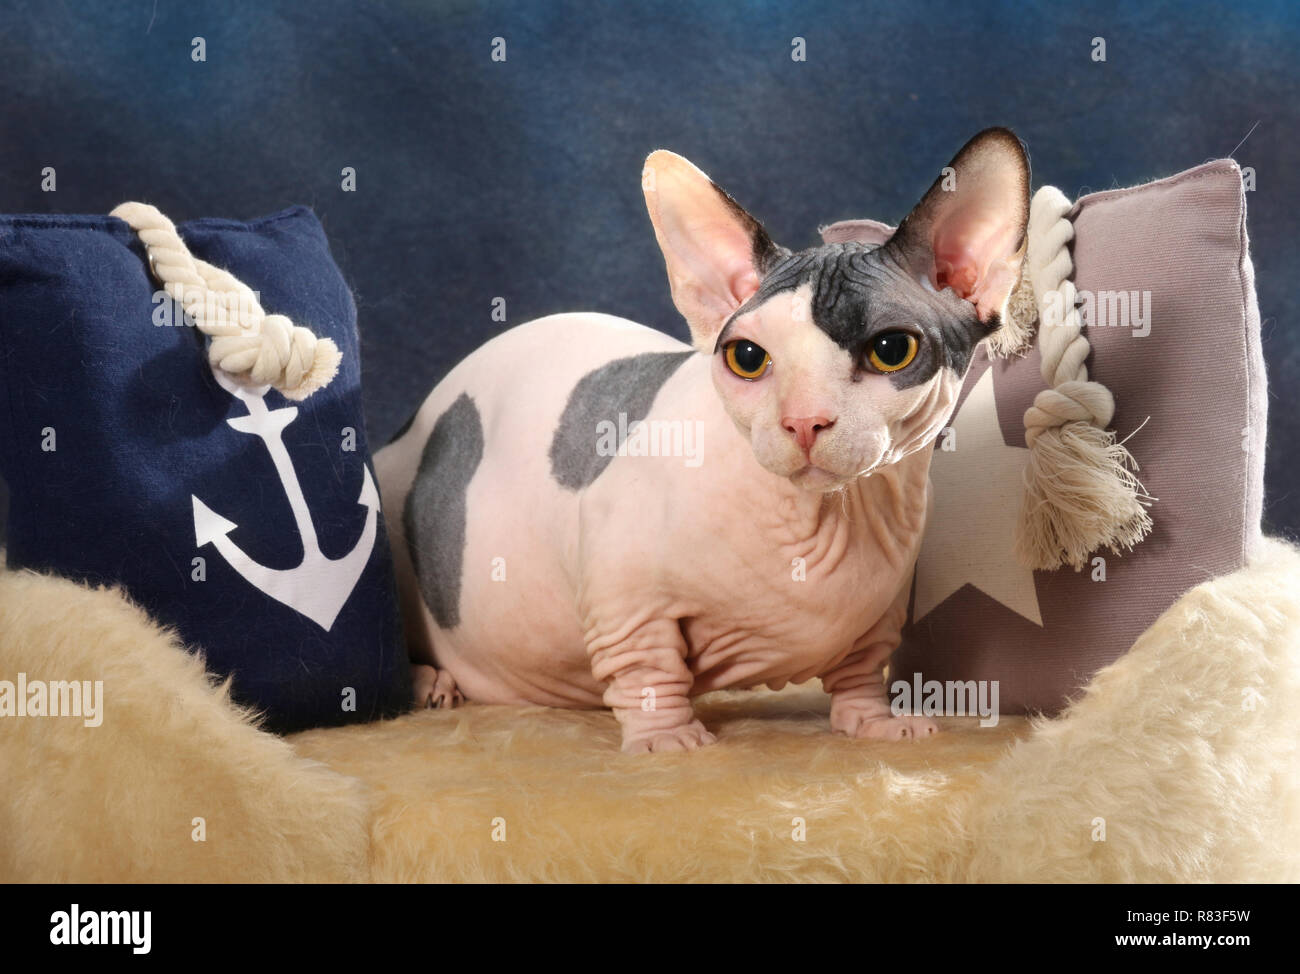 Esfinge Cat, Bambino, un gato con patas cortas, sentado sobre una almohada  Fotografía de stock - Alamy